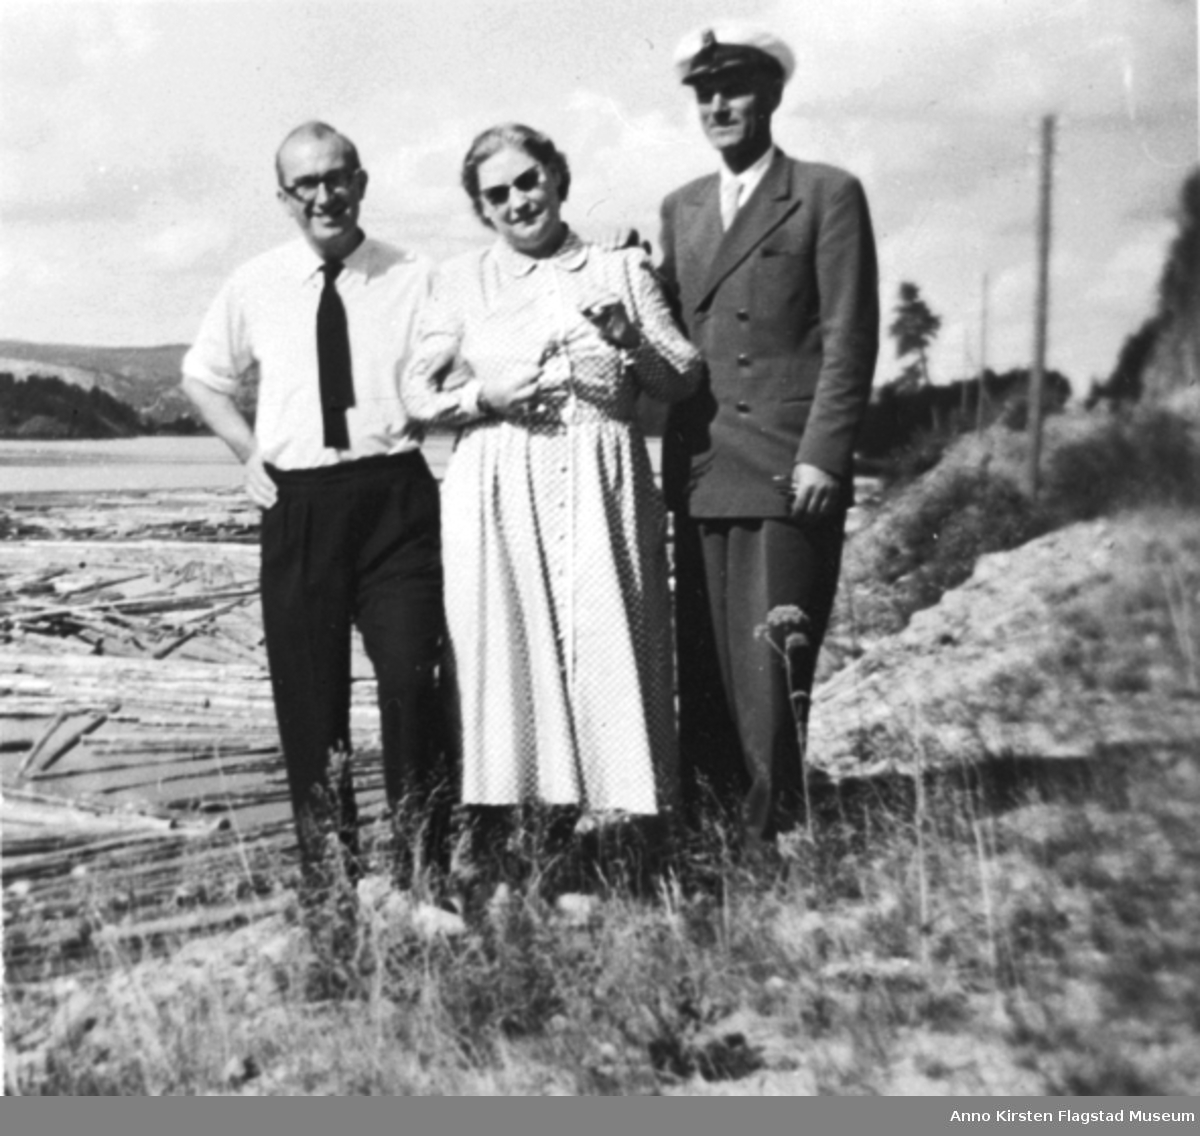 Fra venstre Lord Bernard Miles, Kirsten Flagstad og sjåfør Karl Nilssen sommeren 1953. From left: Lord Bernard Miles, Kirsten Flagstad and driver Karl Nilssen summer 1953. 